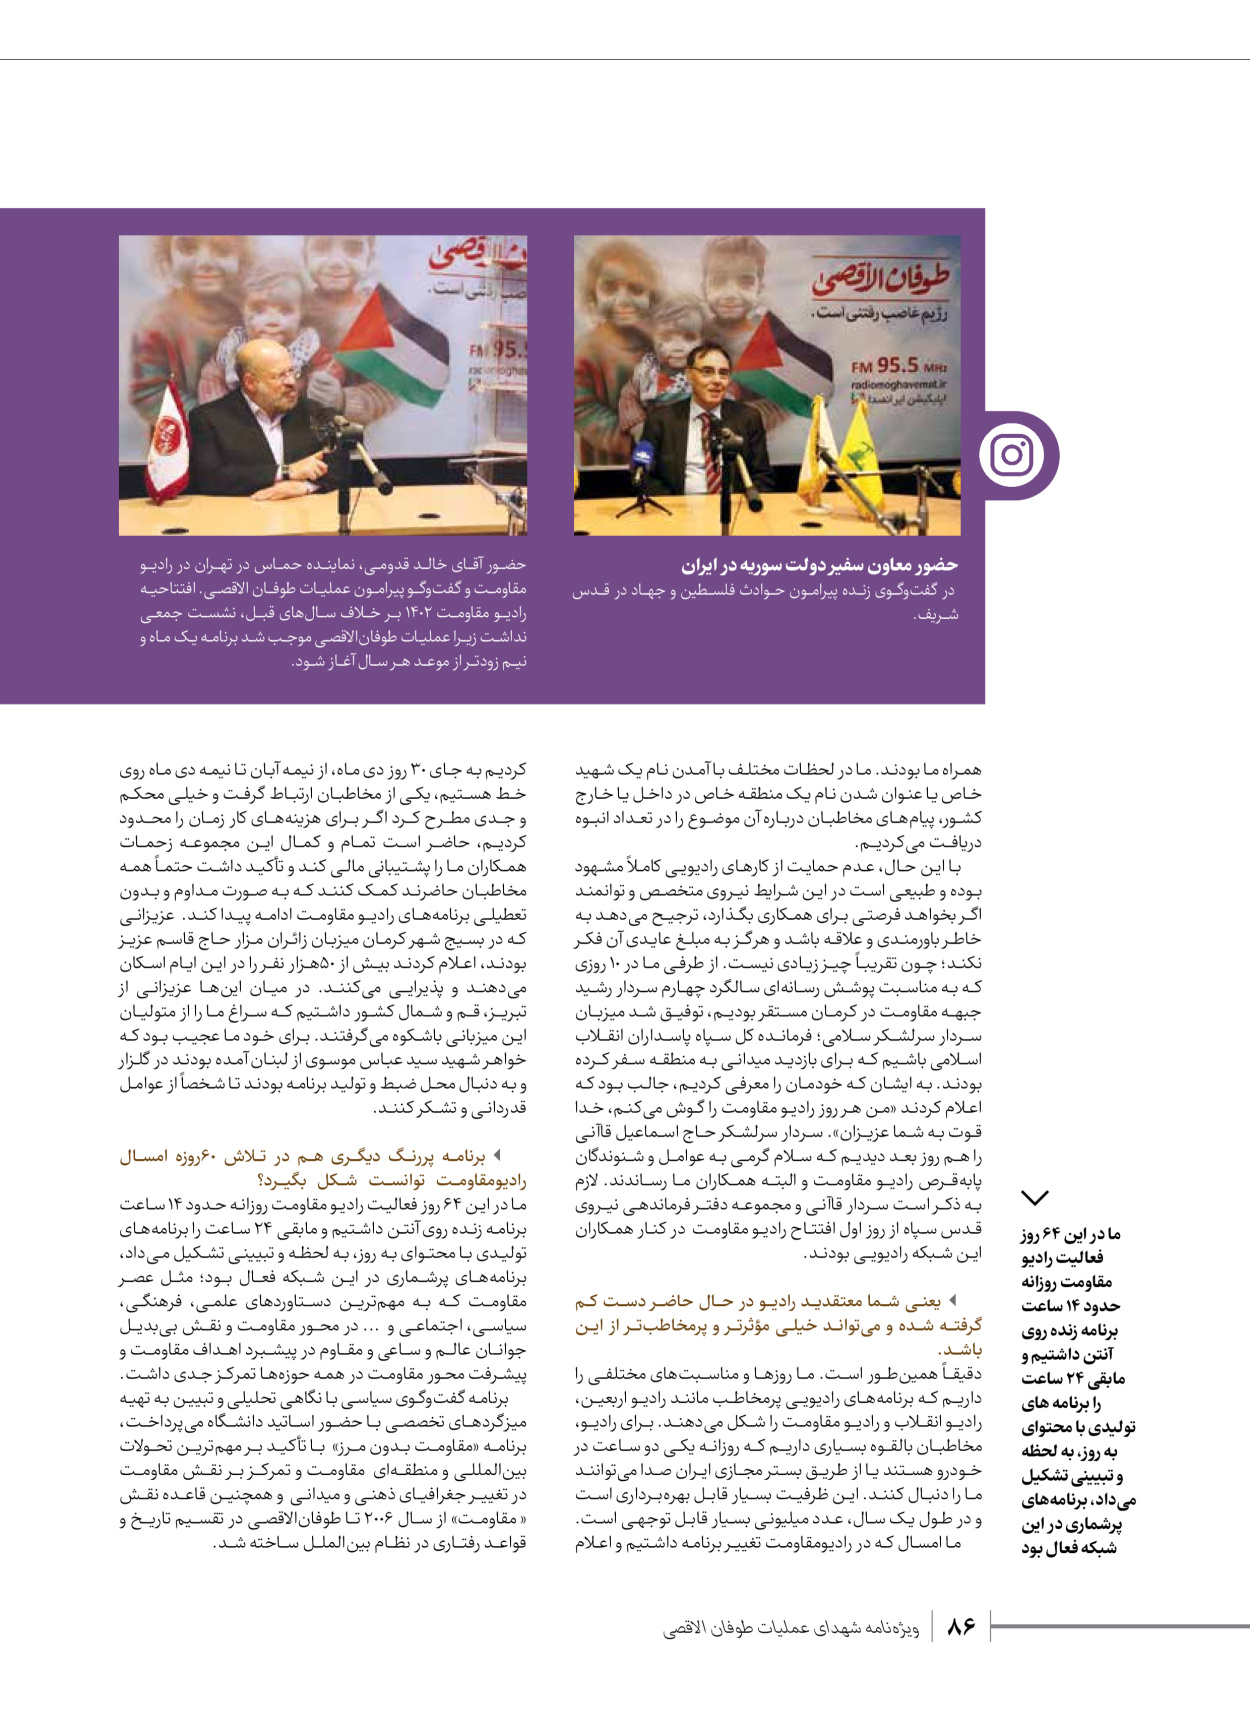 روزنامه ایران - ویژه نامه شهدای قدس ۳ - ۱۴ بهمن ۱۴۰۲ - صفحه ۸۶